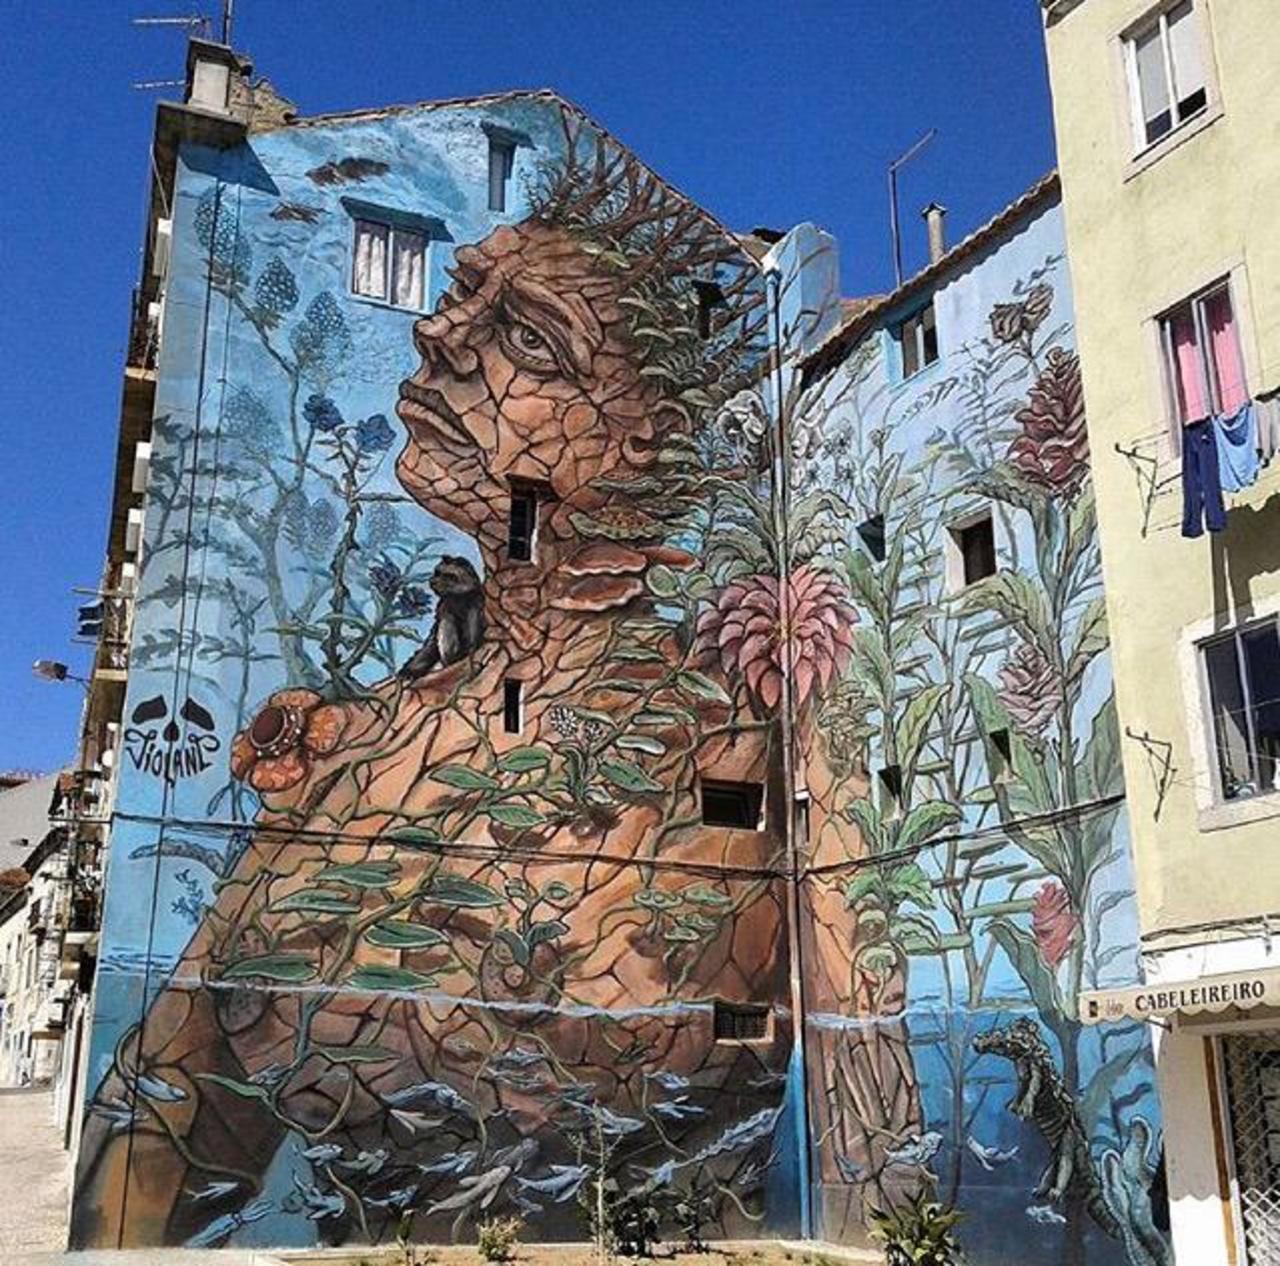 RT @buzz_sandyltn: Street Art by Violant 

#art #graffiti #mural #streetart http://t.co/BSFYOg4OIQ